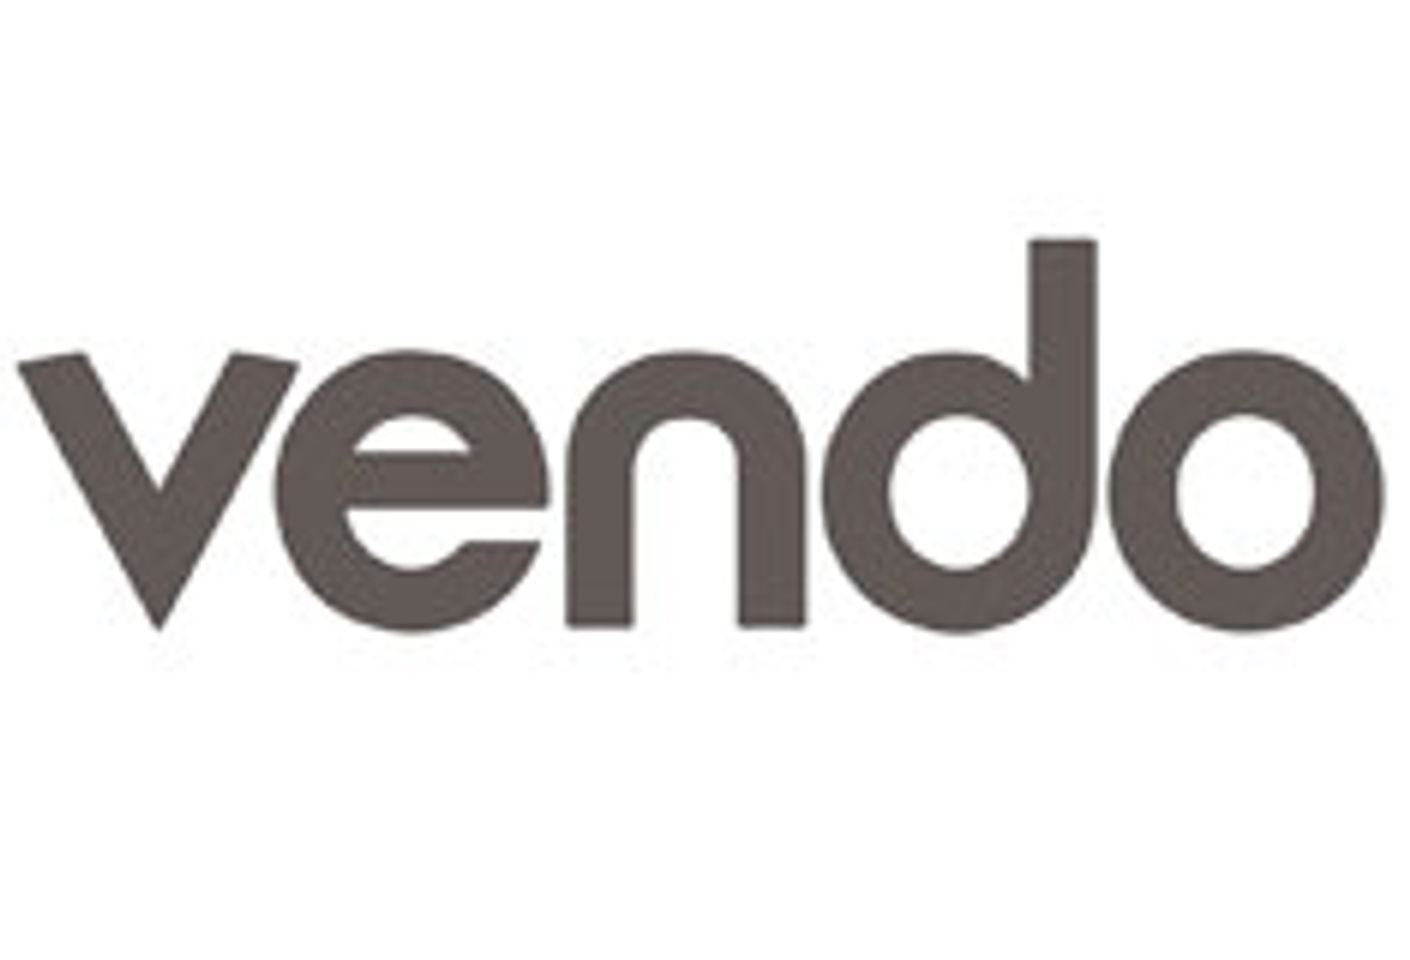 Vendo Set to Host Its Third Vendo Partner Conference